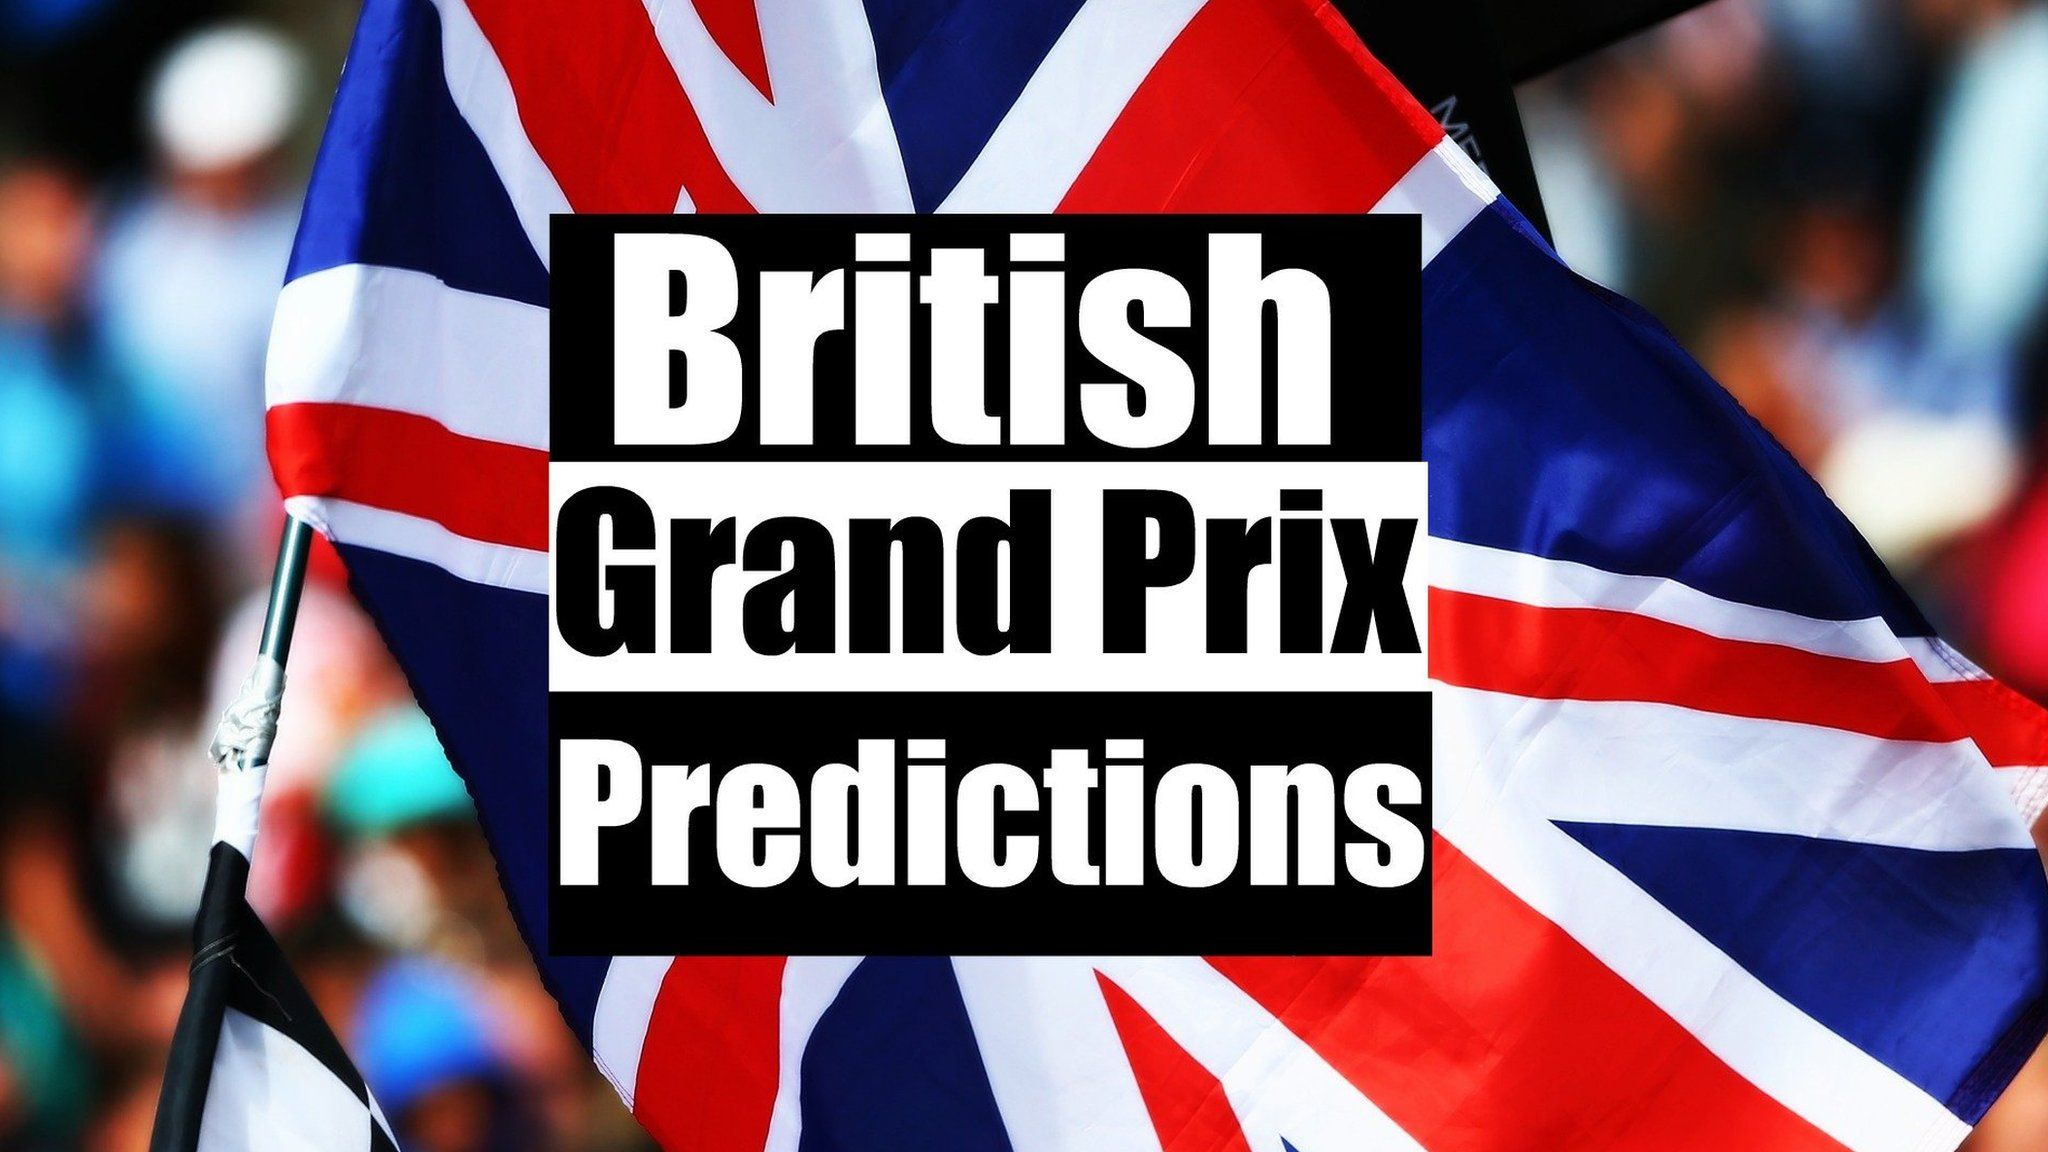 British Grand Prix predictions